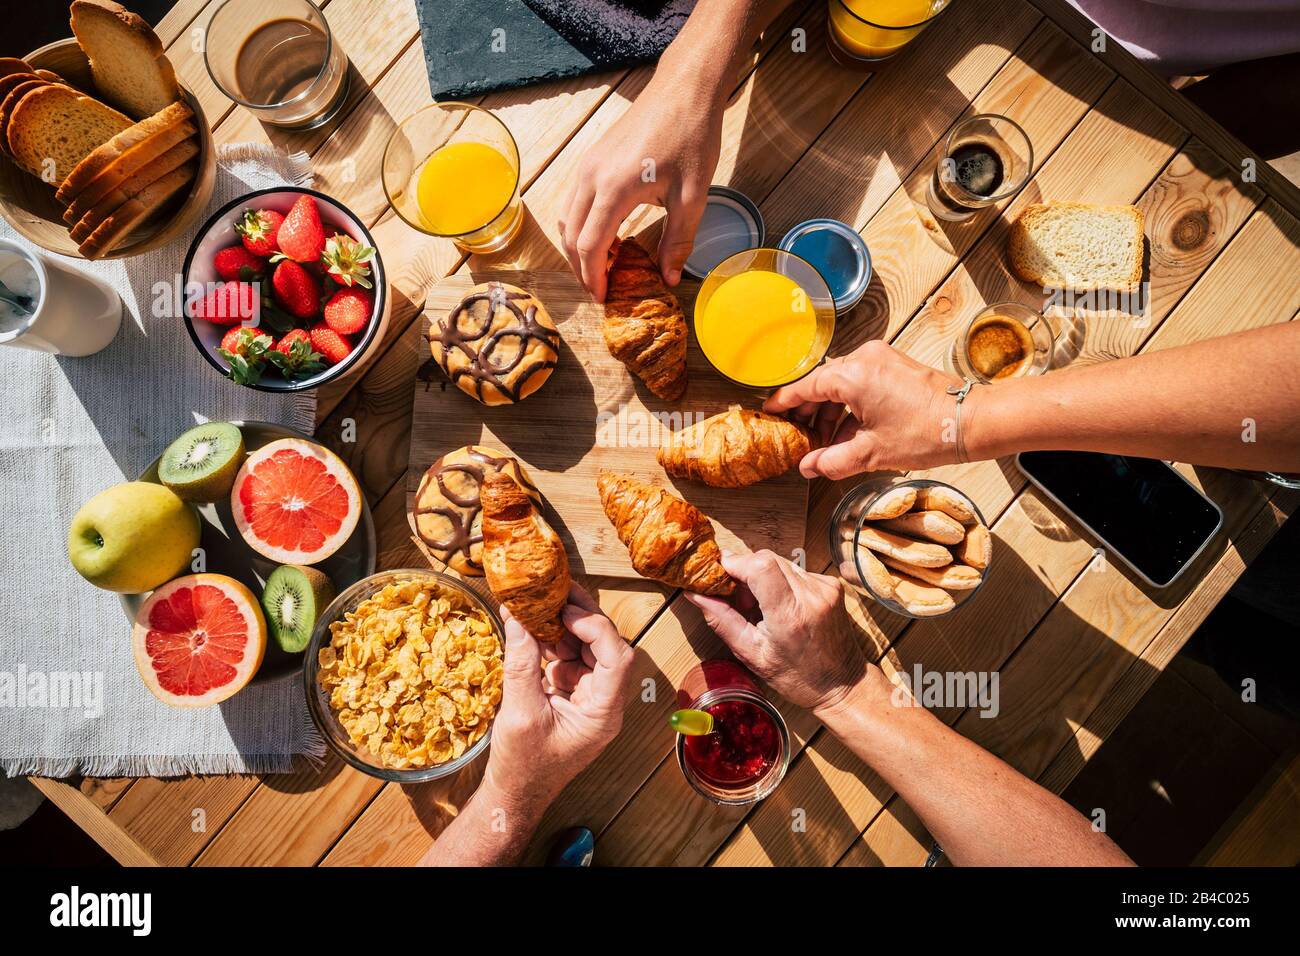 Luftansicht des Holzdesignttisches mit Speisen und Getränken zum Frühstück mit Freunden oder Familie zusammen - Freundschafts- und Zusammengehörigkeitskonzept mit Händen, die Bestechungen von einem Teller nehmen - oben vertikal Stockfoto